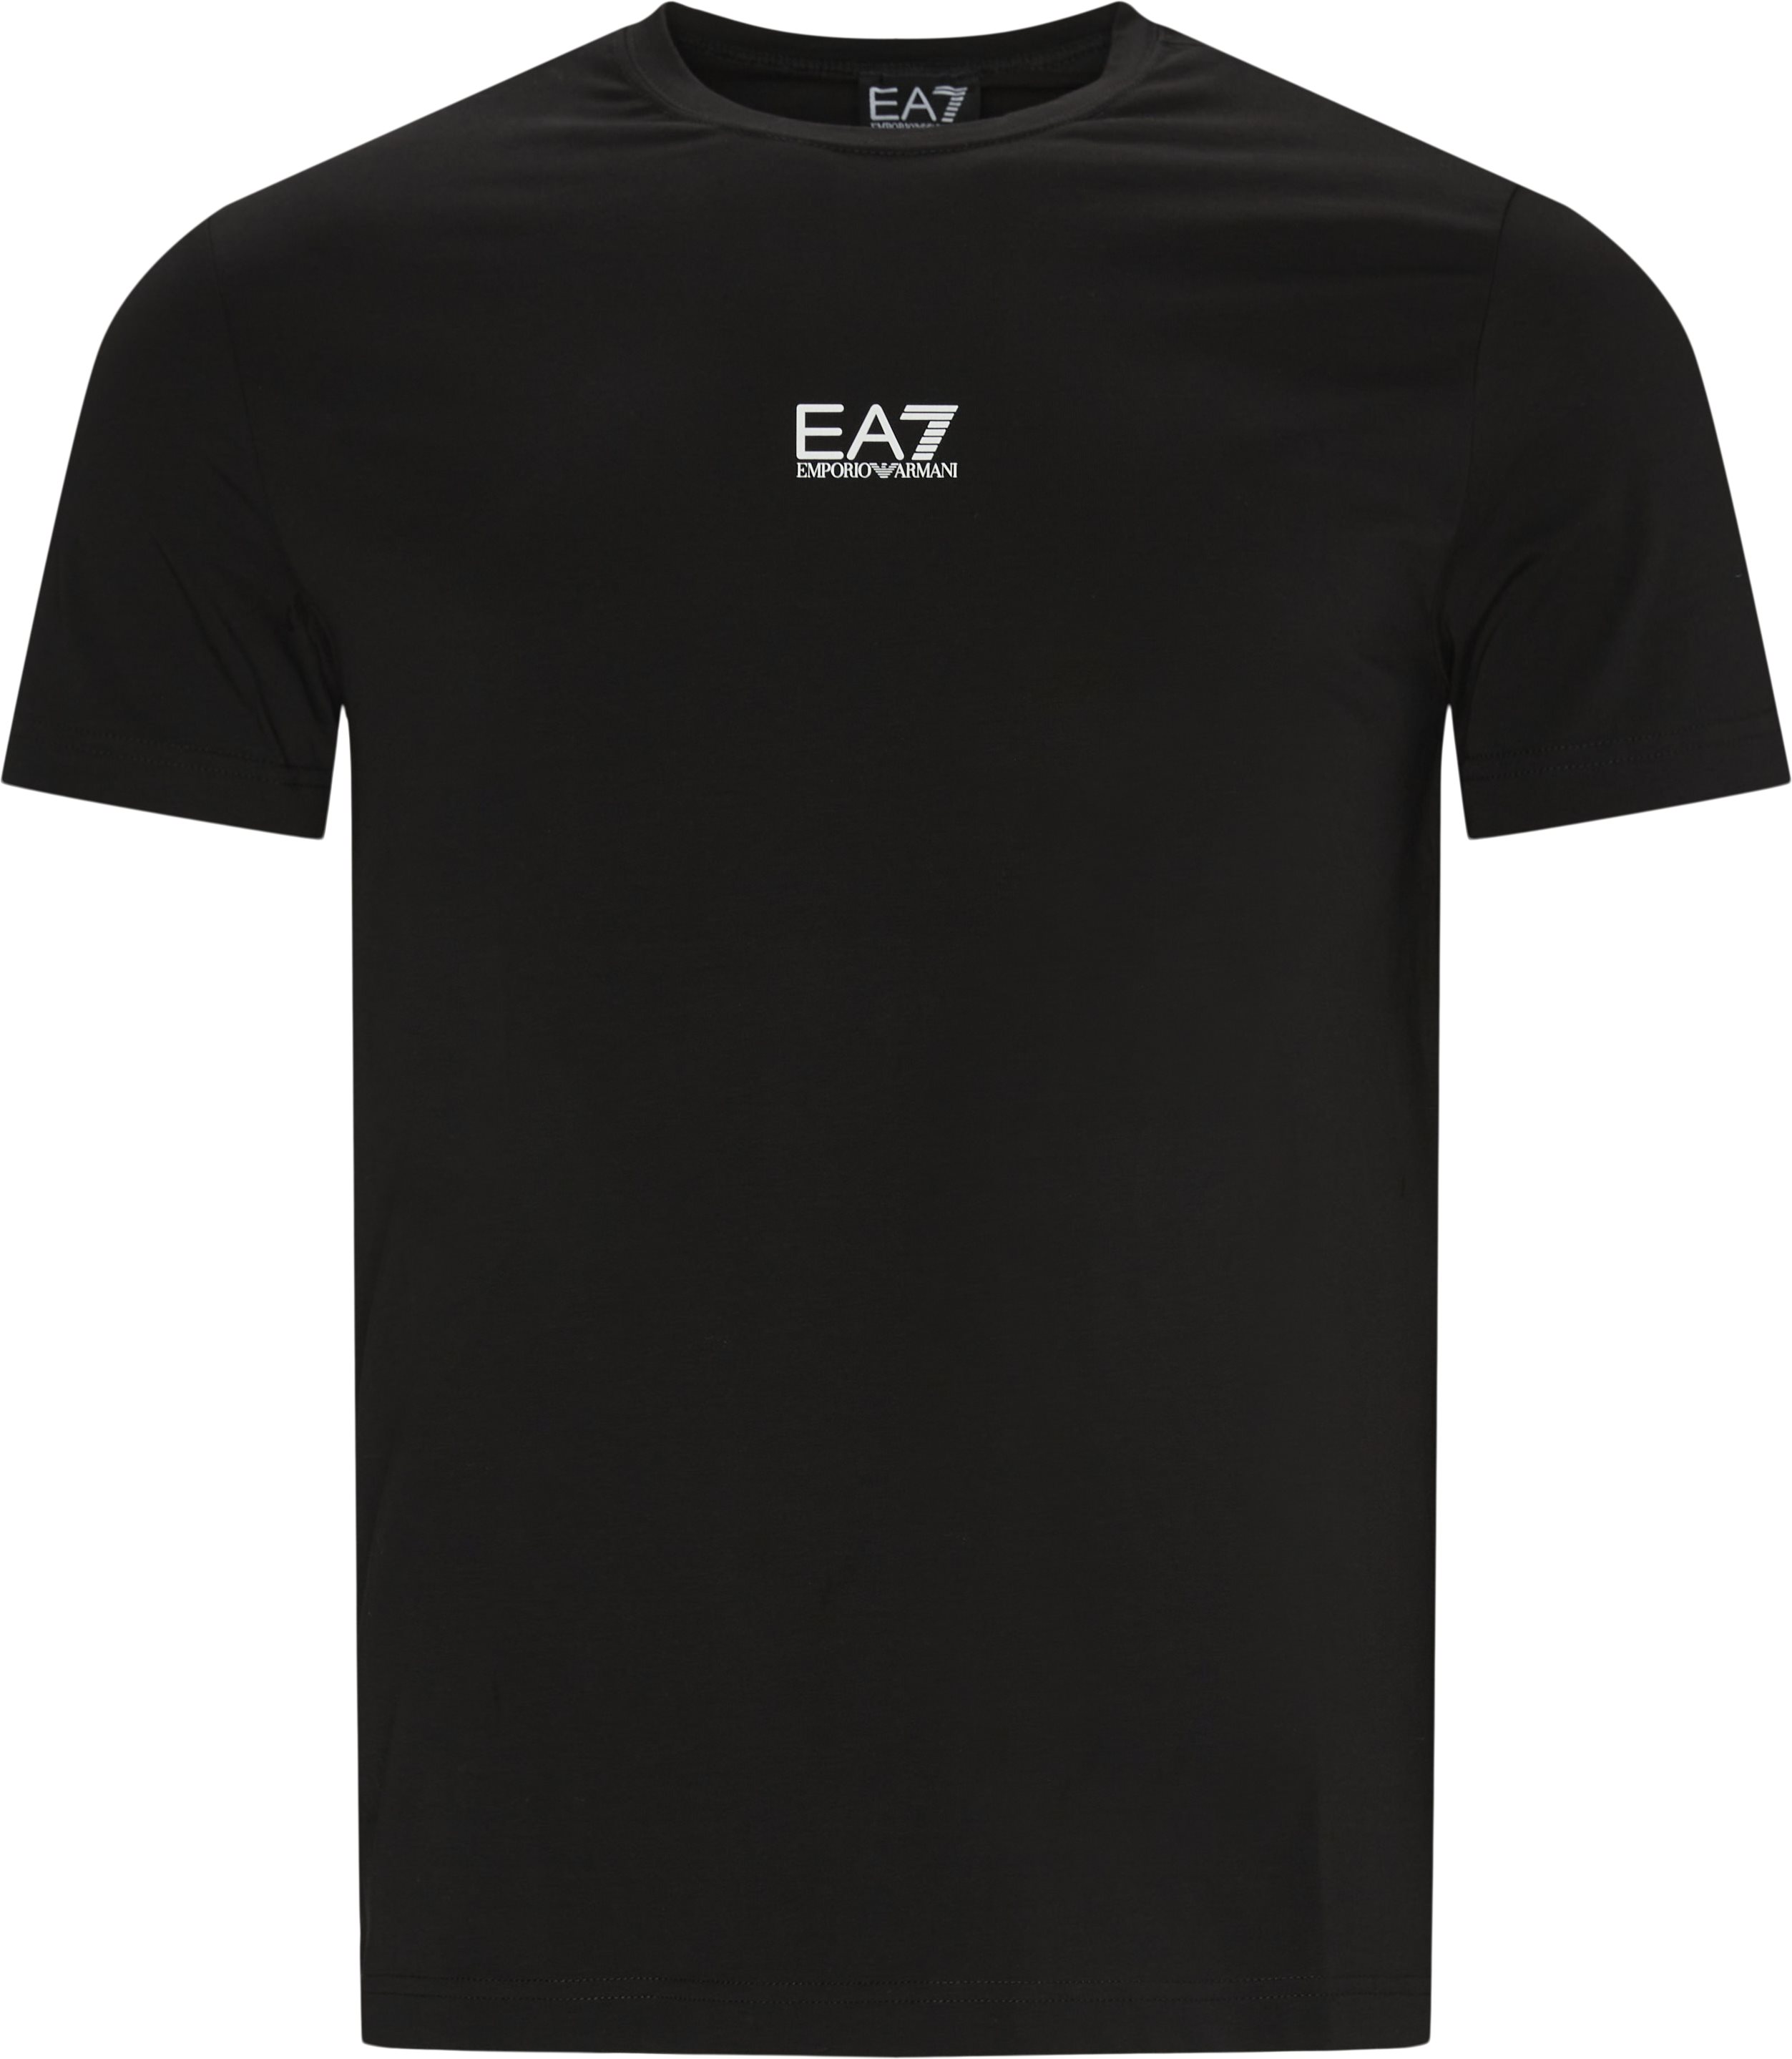 Pj03z-3kpt15 Tee - T-shirts - Regular fit - Black